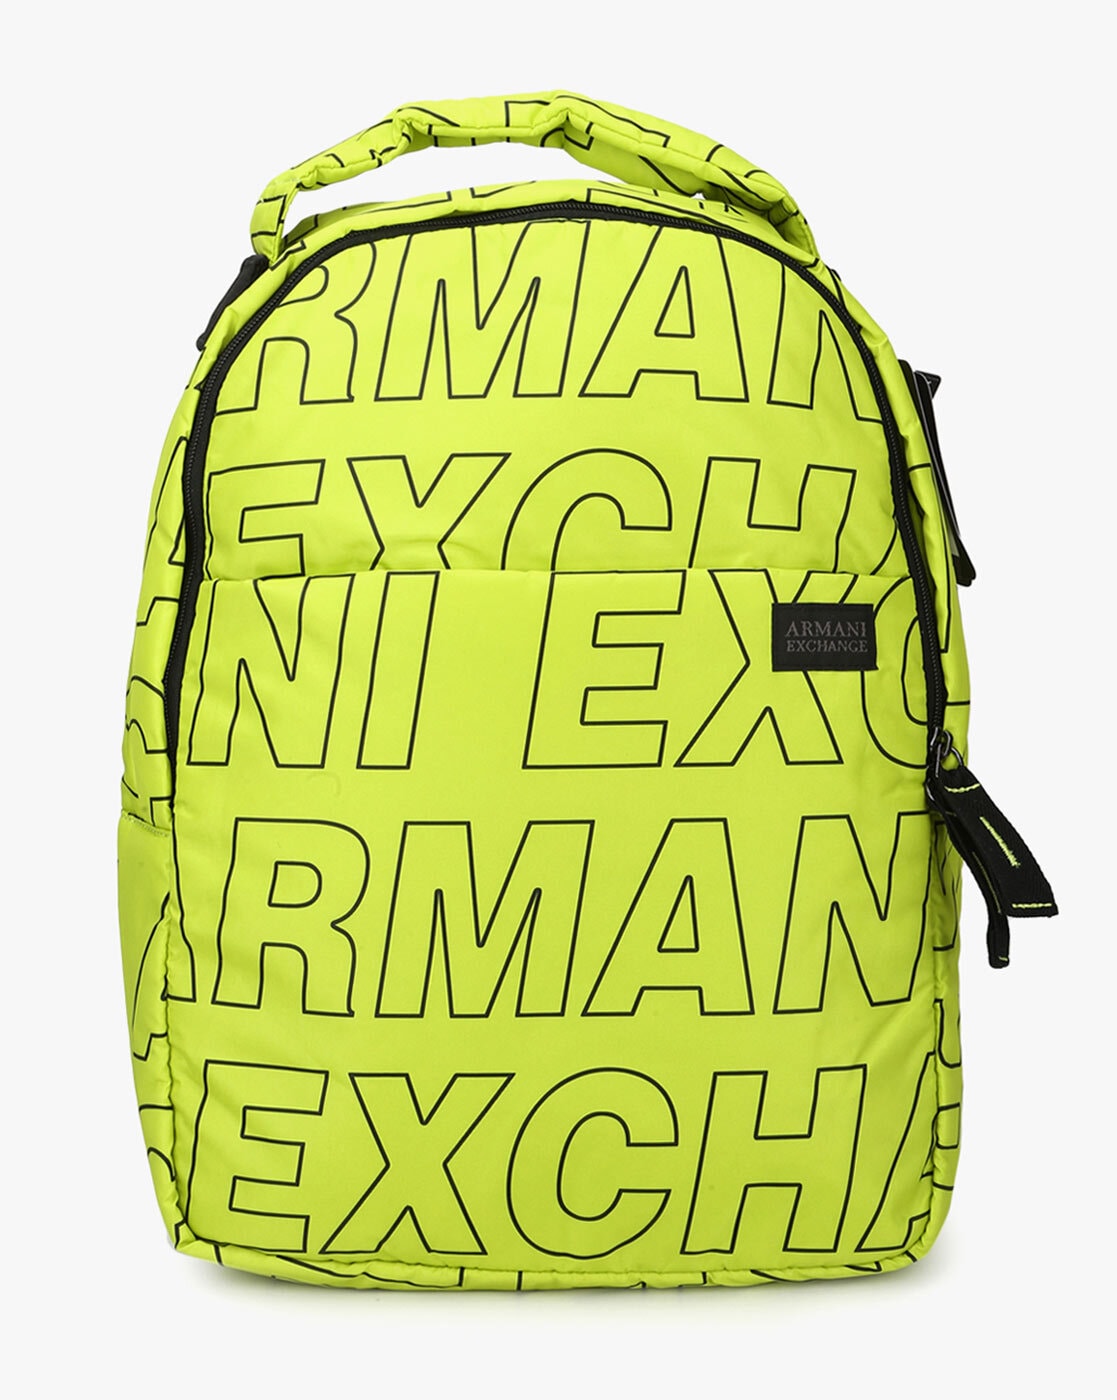 armani exchange backpack india